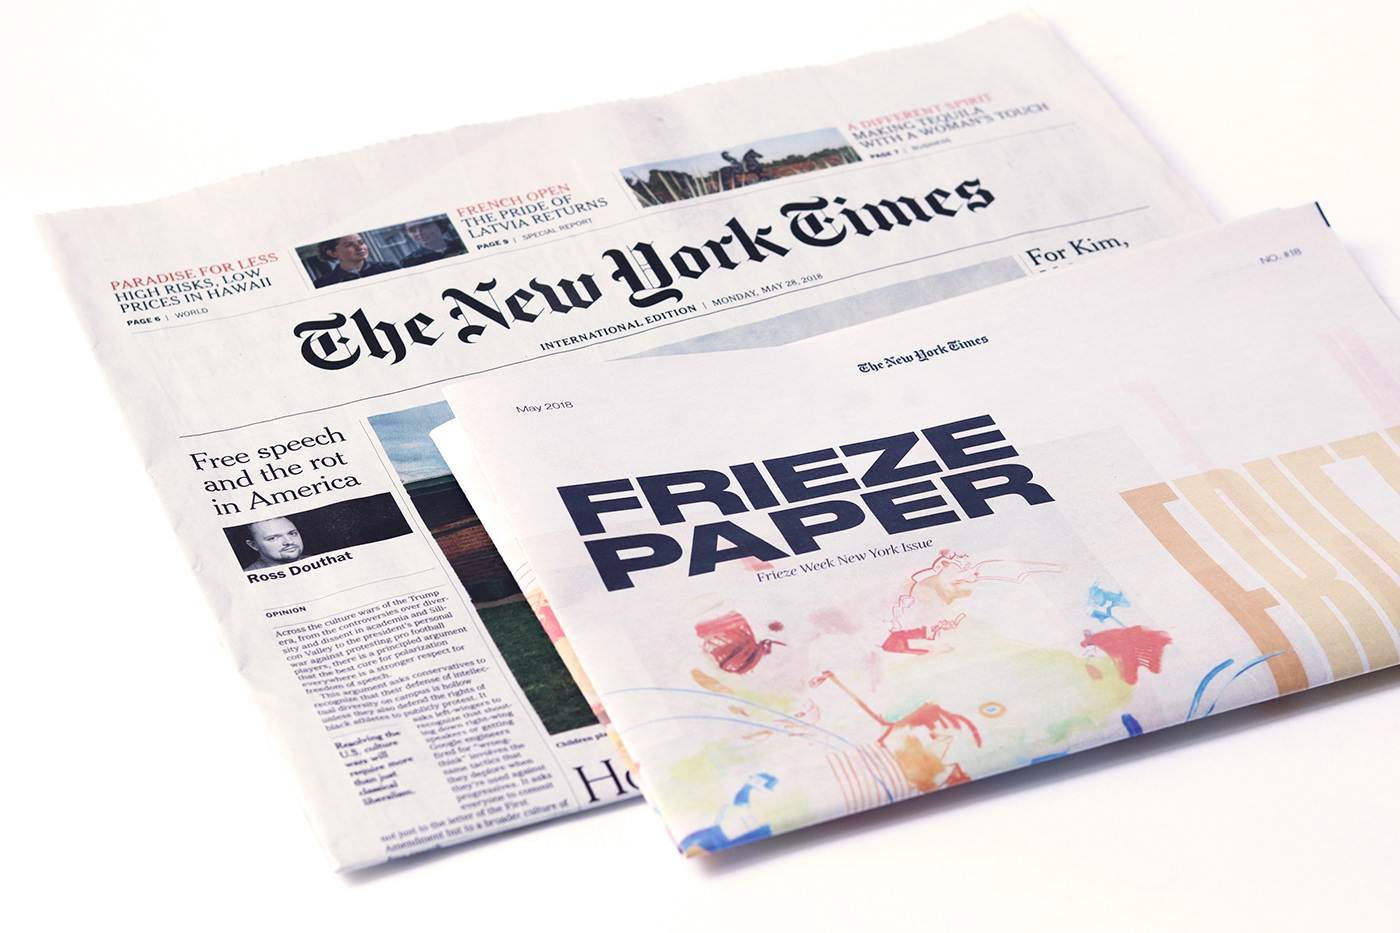 editorial supplement newspaper Newspaper Supplement frieze contemporary art frieze new york New York Times tabloid newspaper club